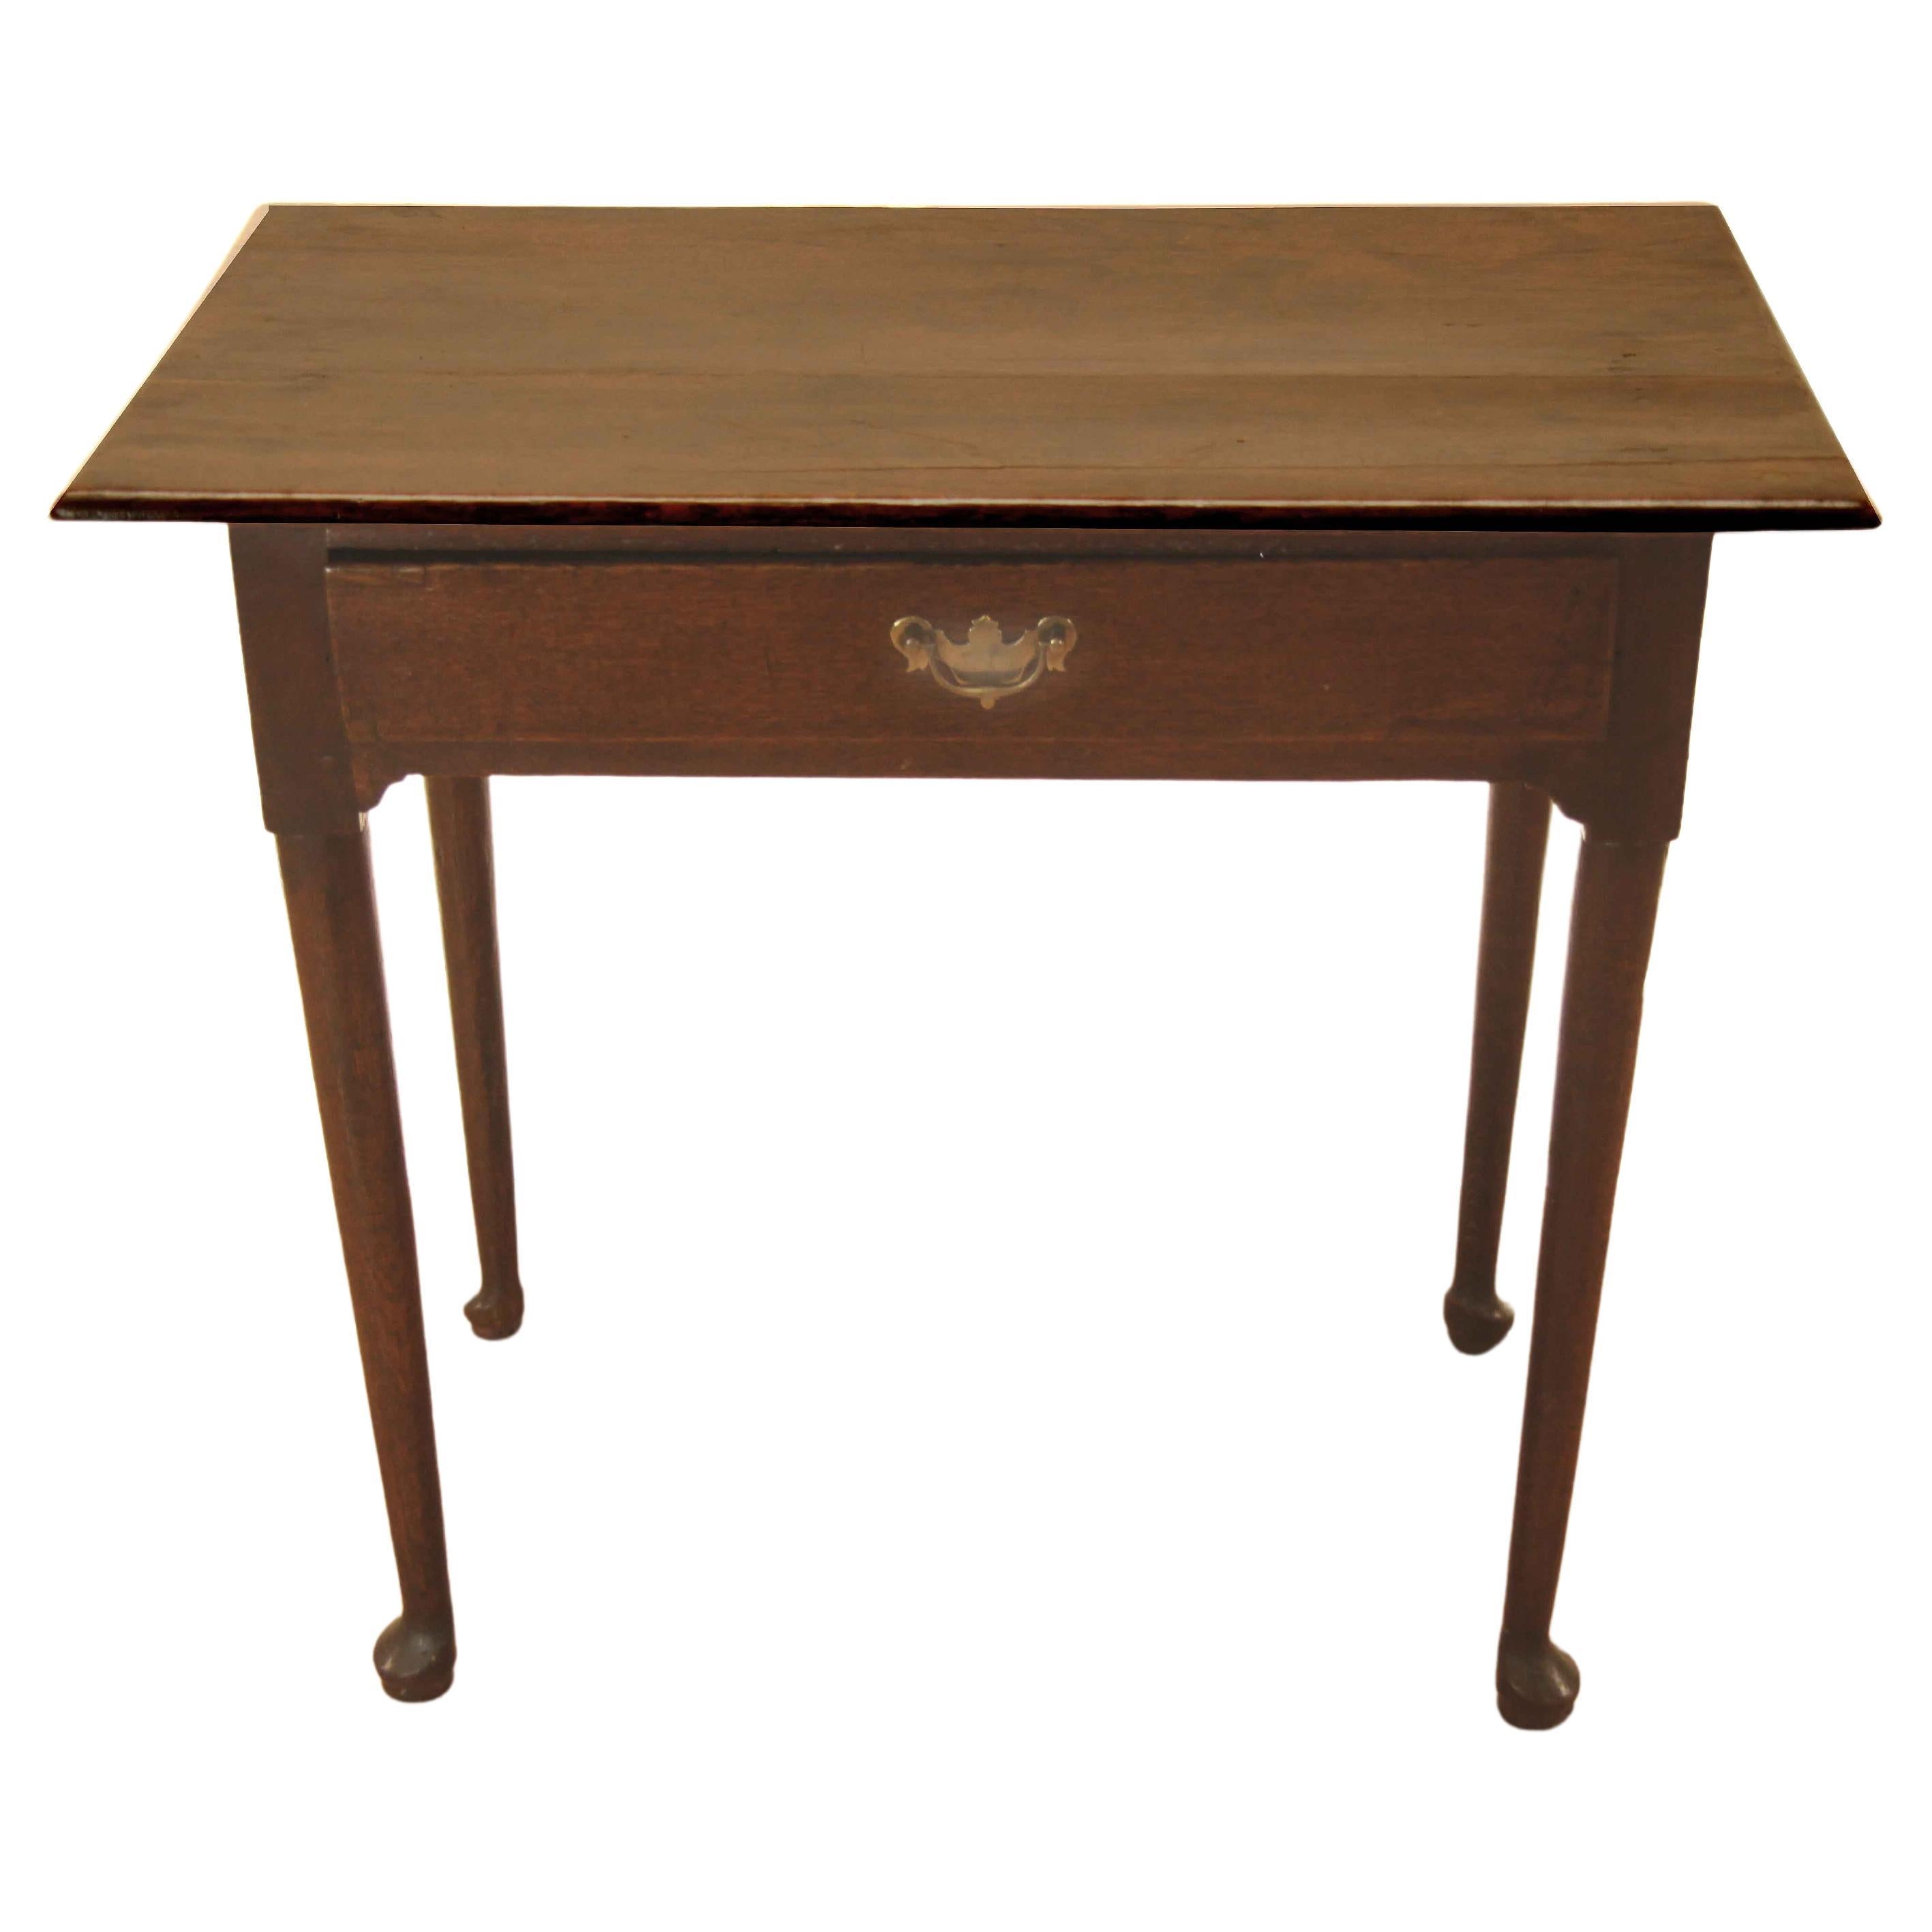 Period Queen Anne Oak Side Table